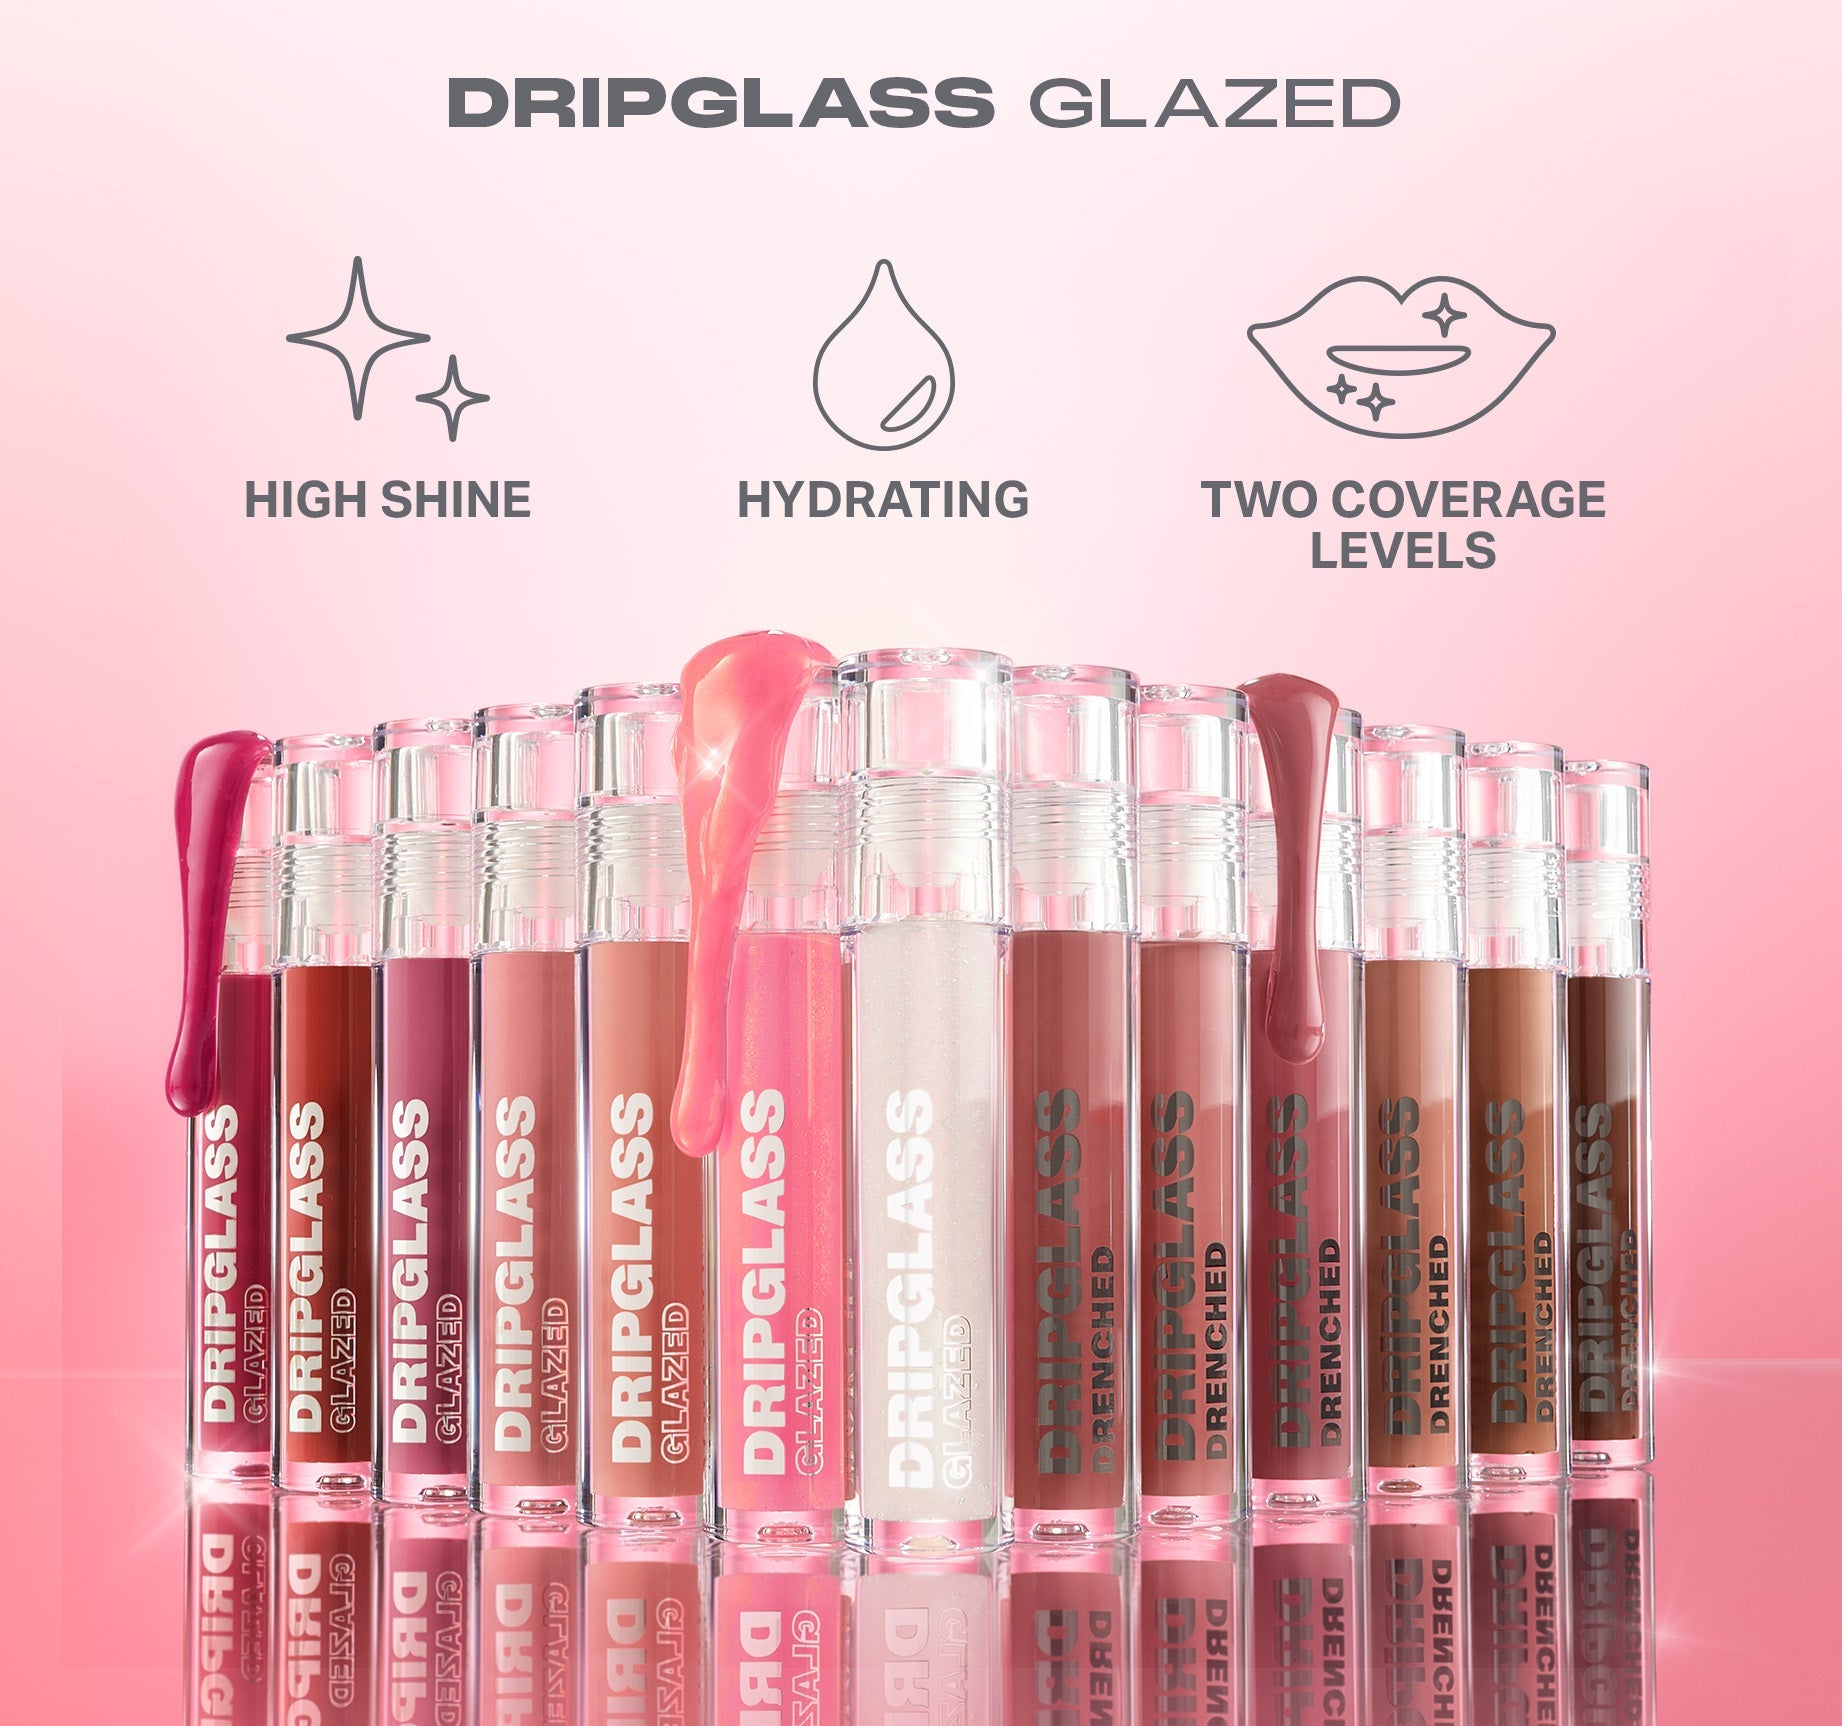 Dripglass Glazed High Shine Lip Gloss - Glint Of Pink - Image 6